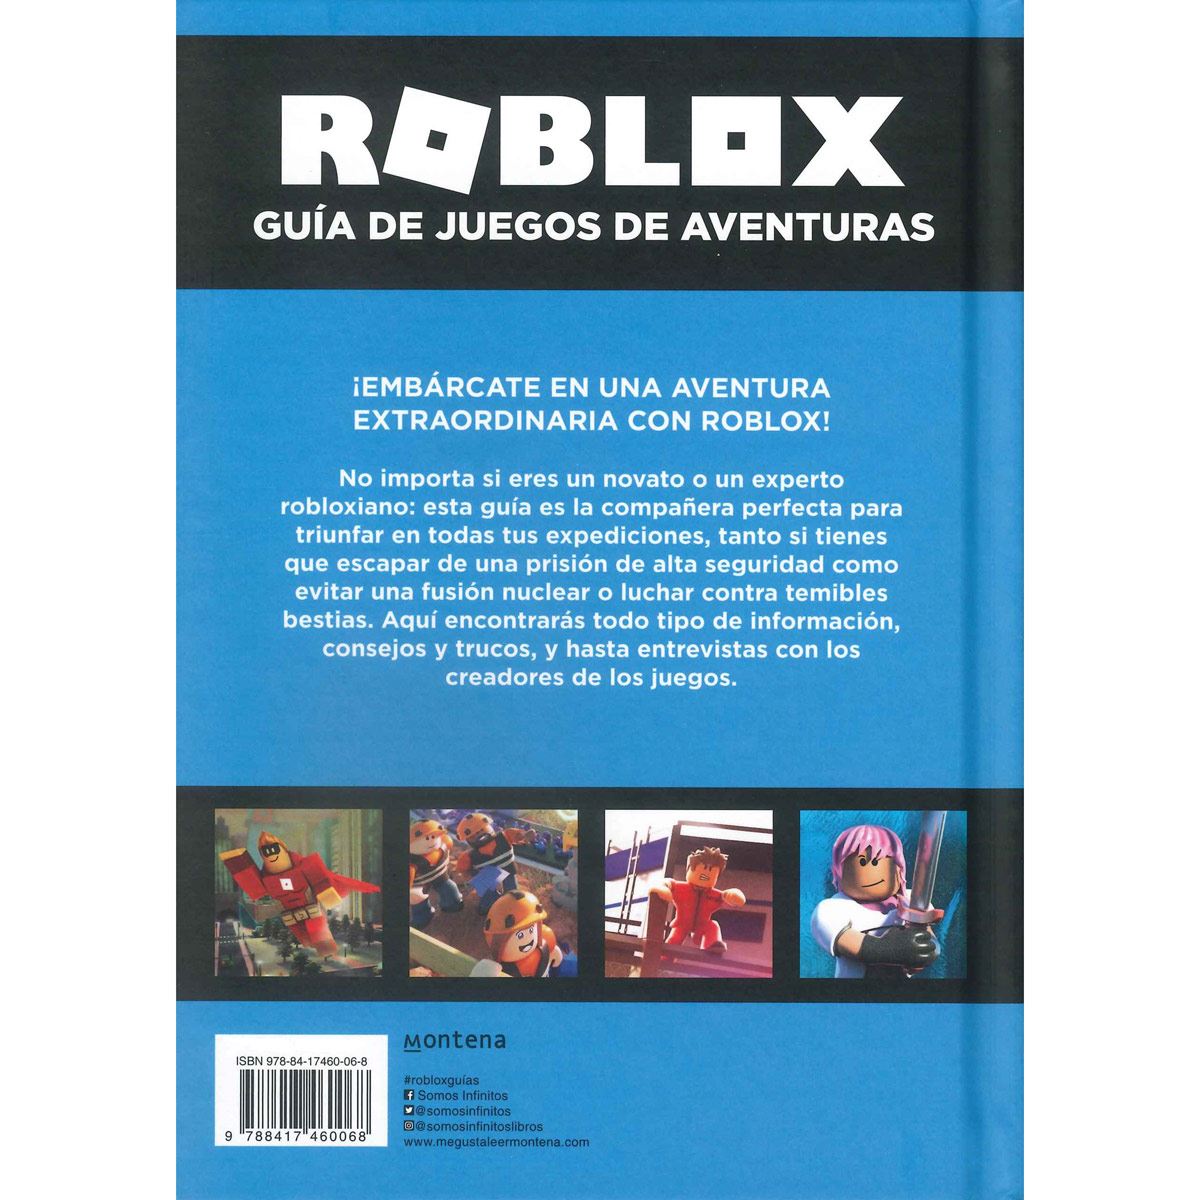 Roblox Guia De Juegos De Aventuras - roblox figura munecos y accesorios juegos y juguetes 8